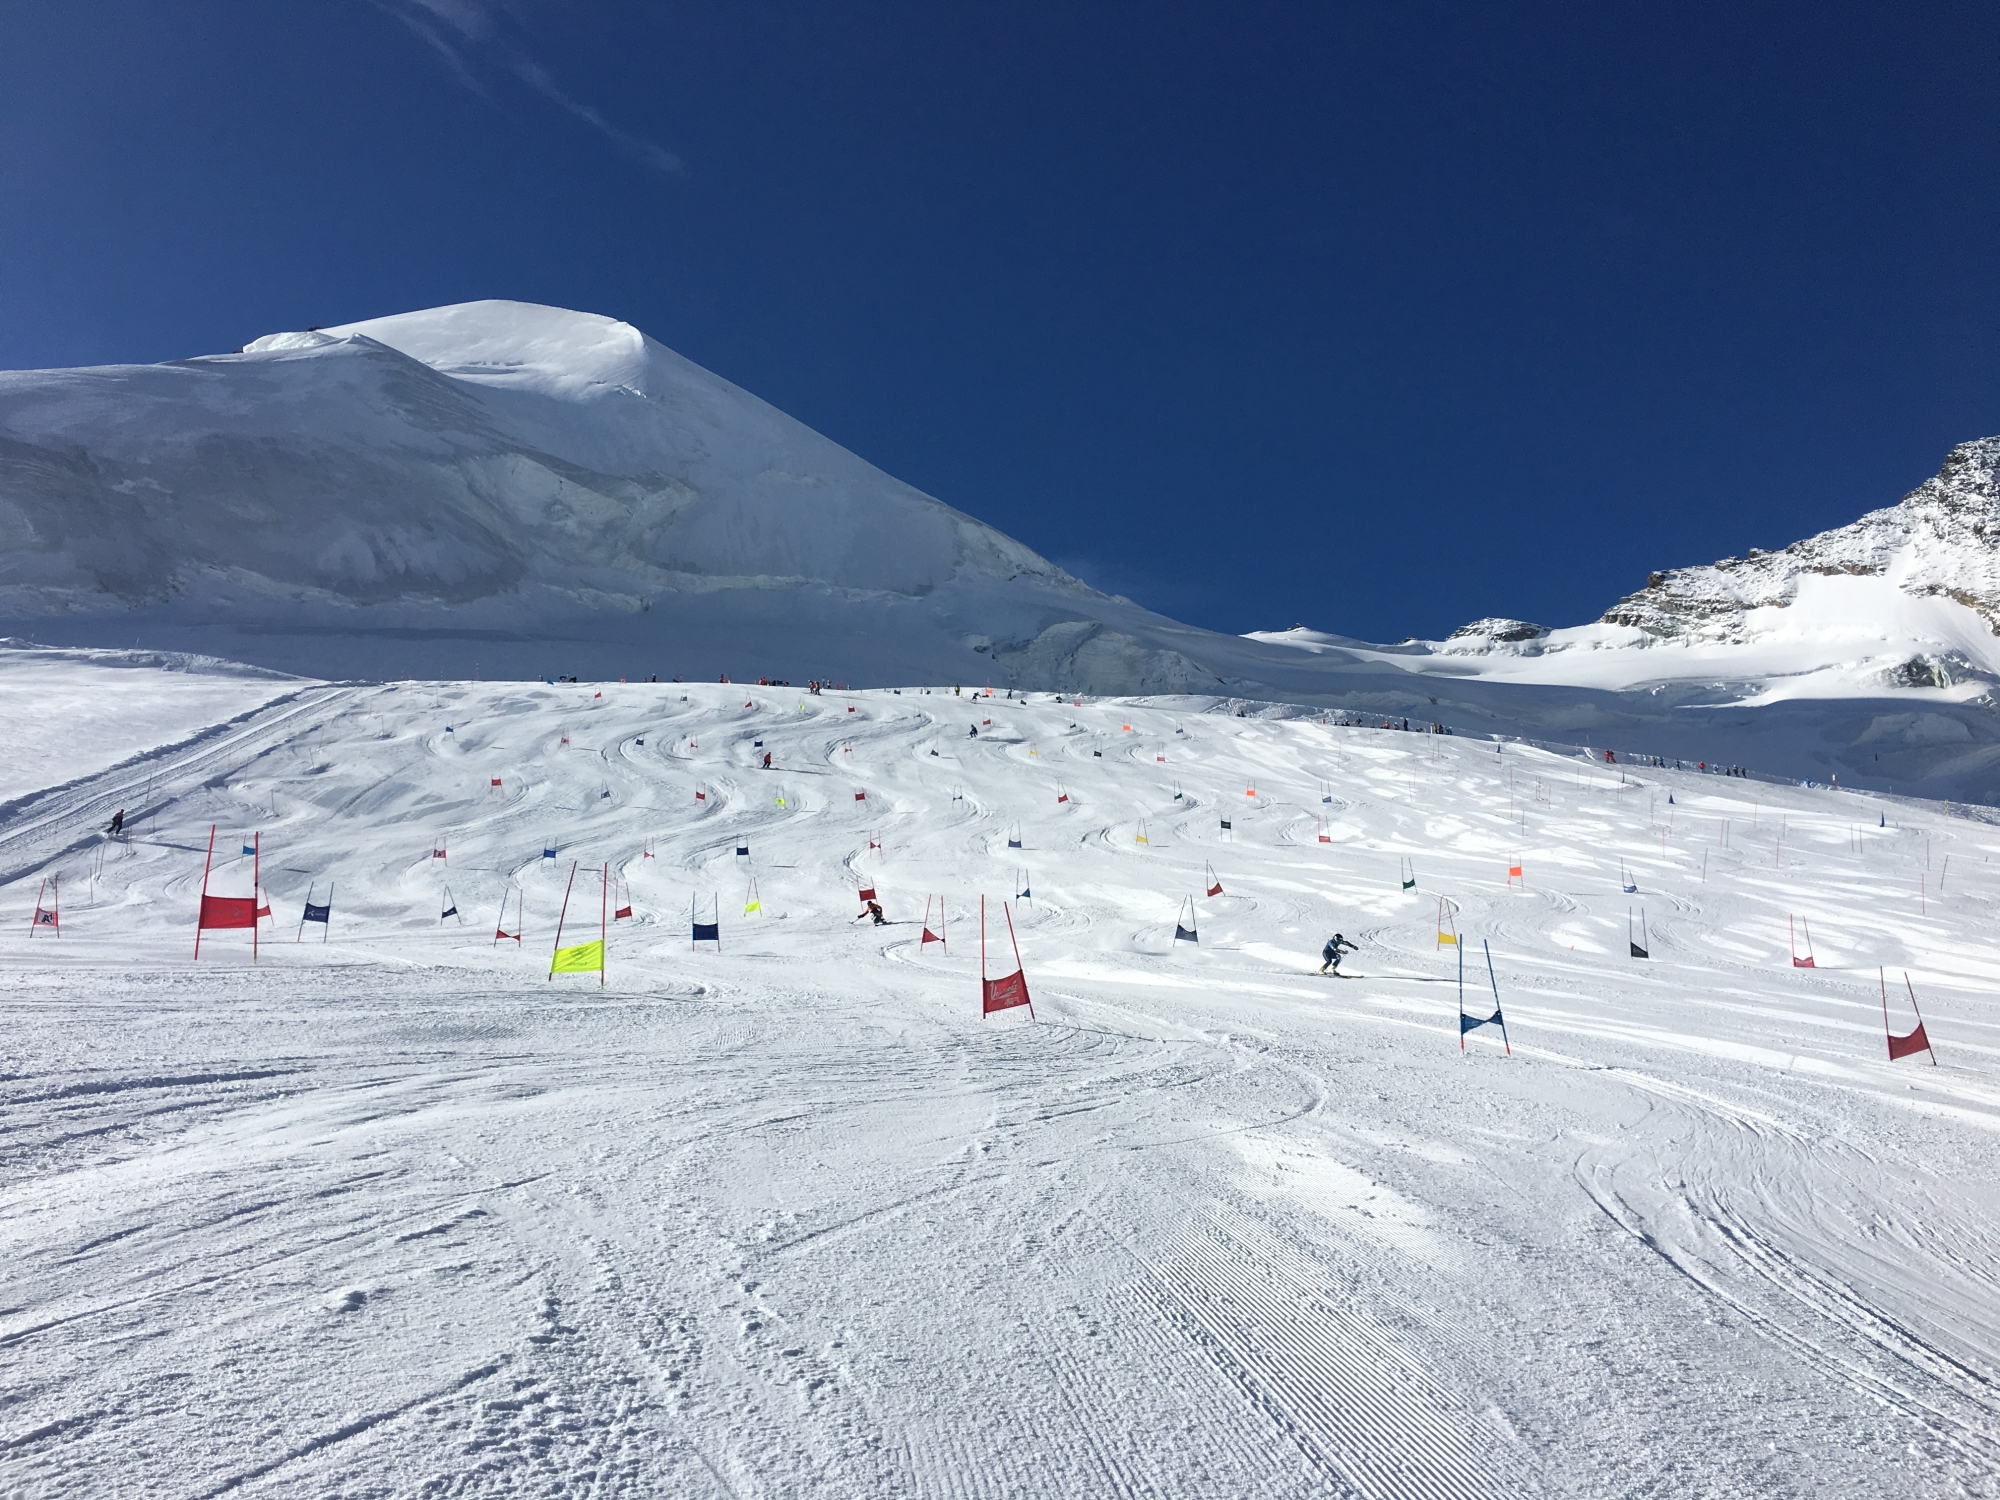 Ski alpin: pris d’assaut par de nombreuses équipes en camp, le glacier de Saas-Fee est saturé l'été